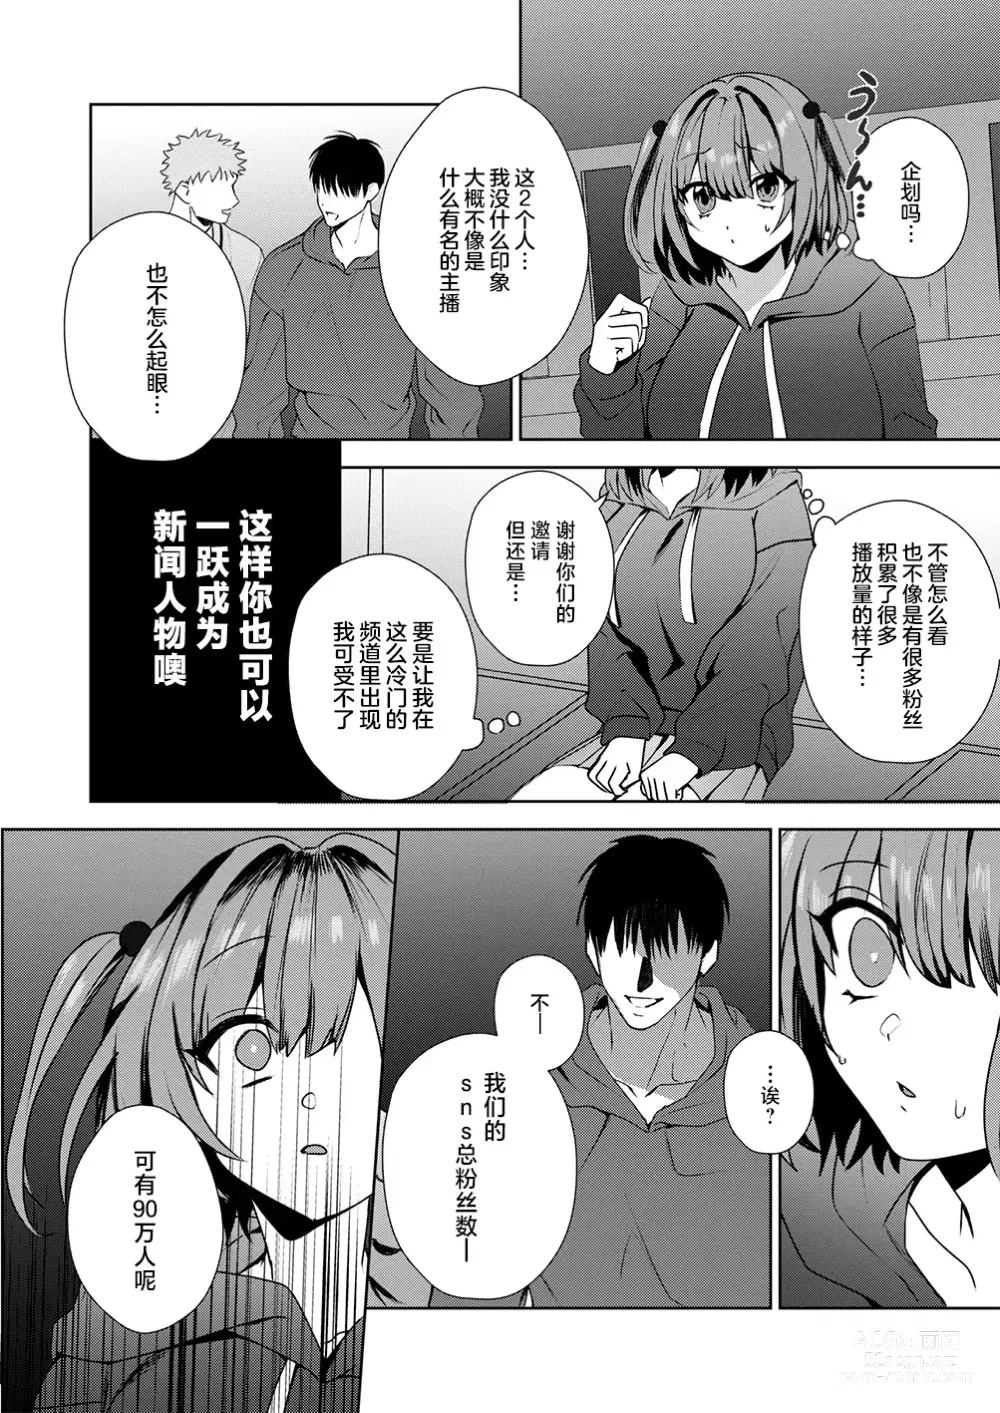 Page 6 of manga Motto Atashi o Oshite kure!